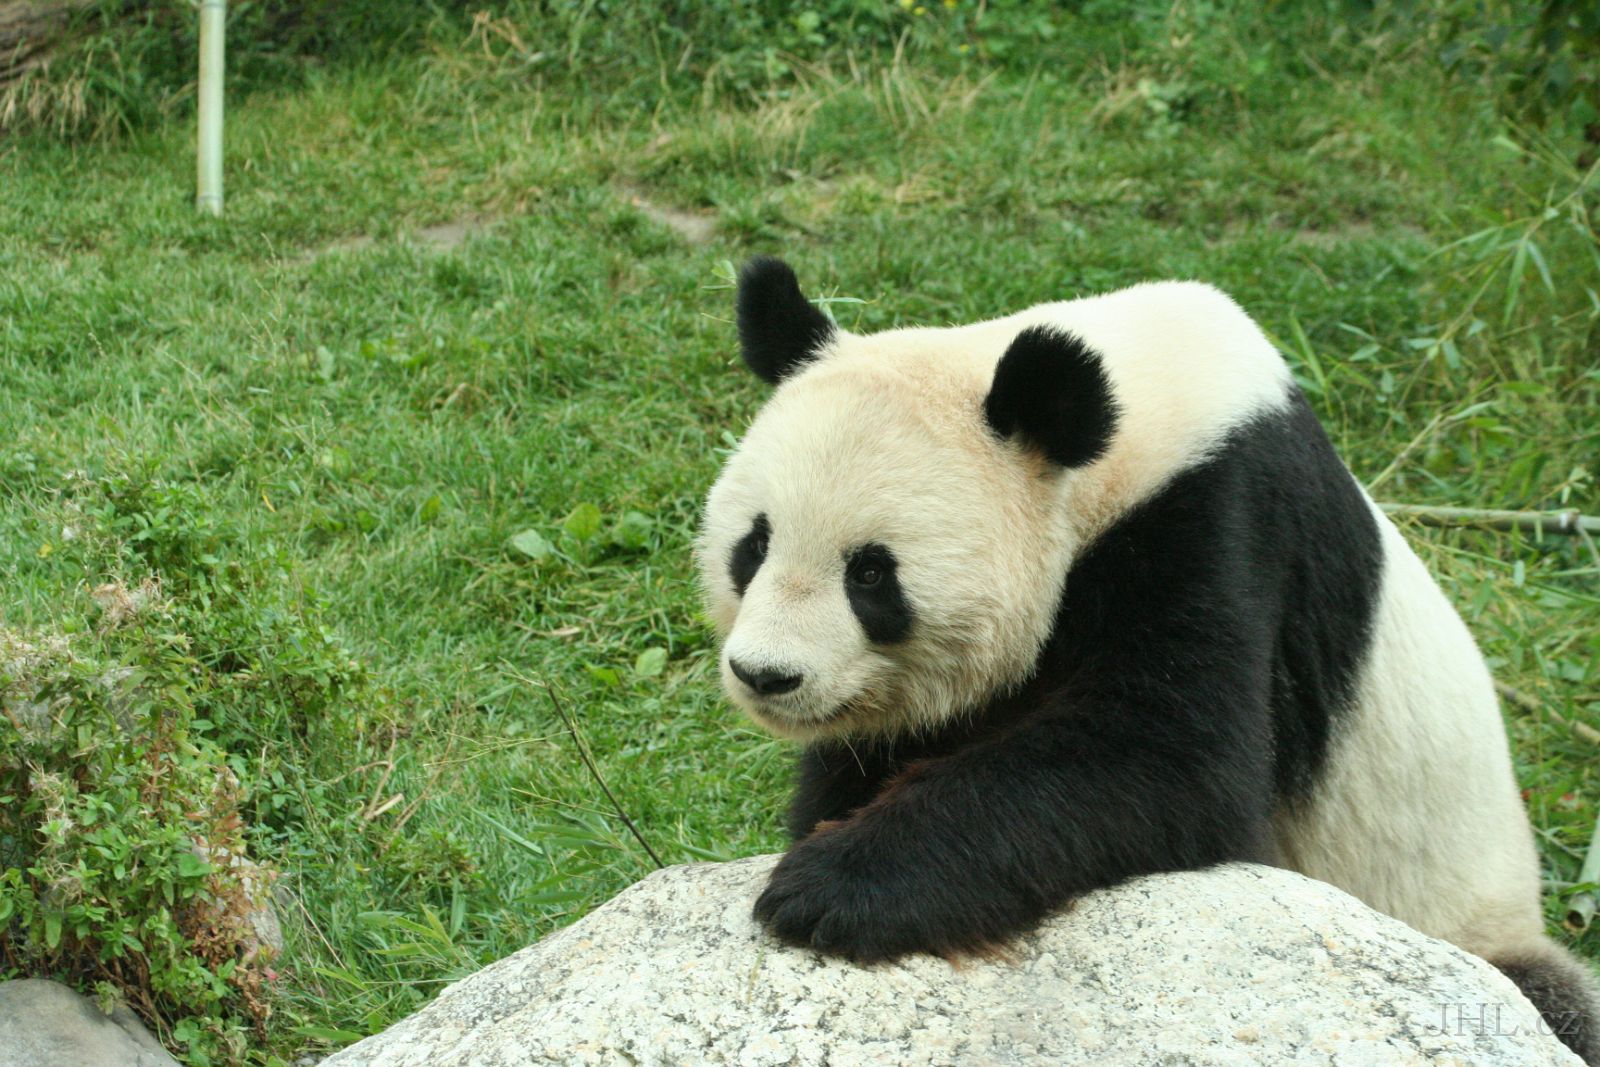 060917c705.JPG - Panda velká (Ailuropoda melanoleuca)